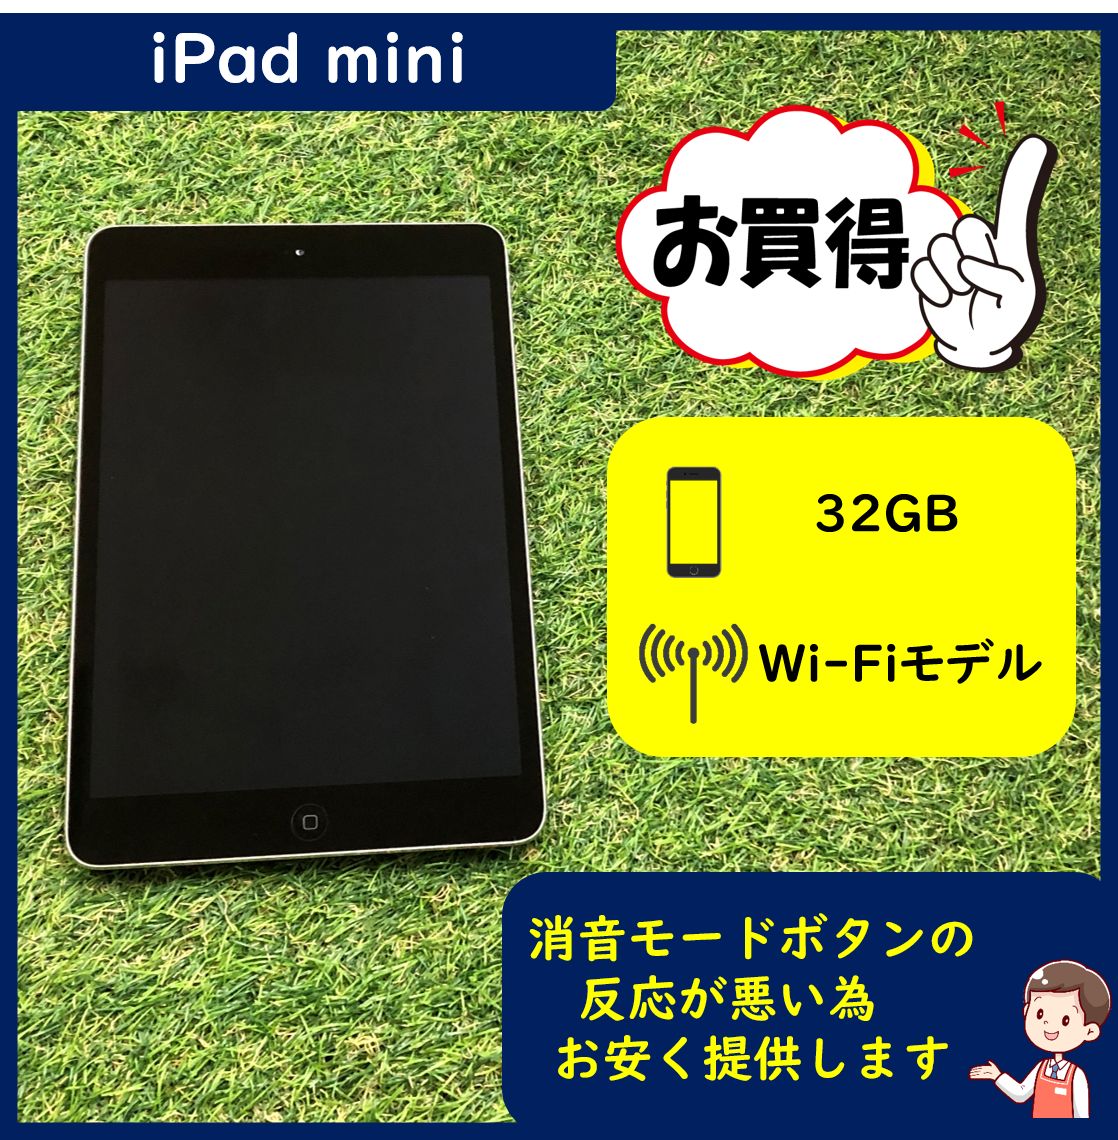 ☆セール品 iPad mini 2 Wi-Fiモデル 32GB スペースグレイ 消音ボタン